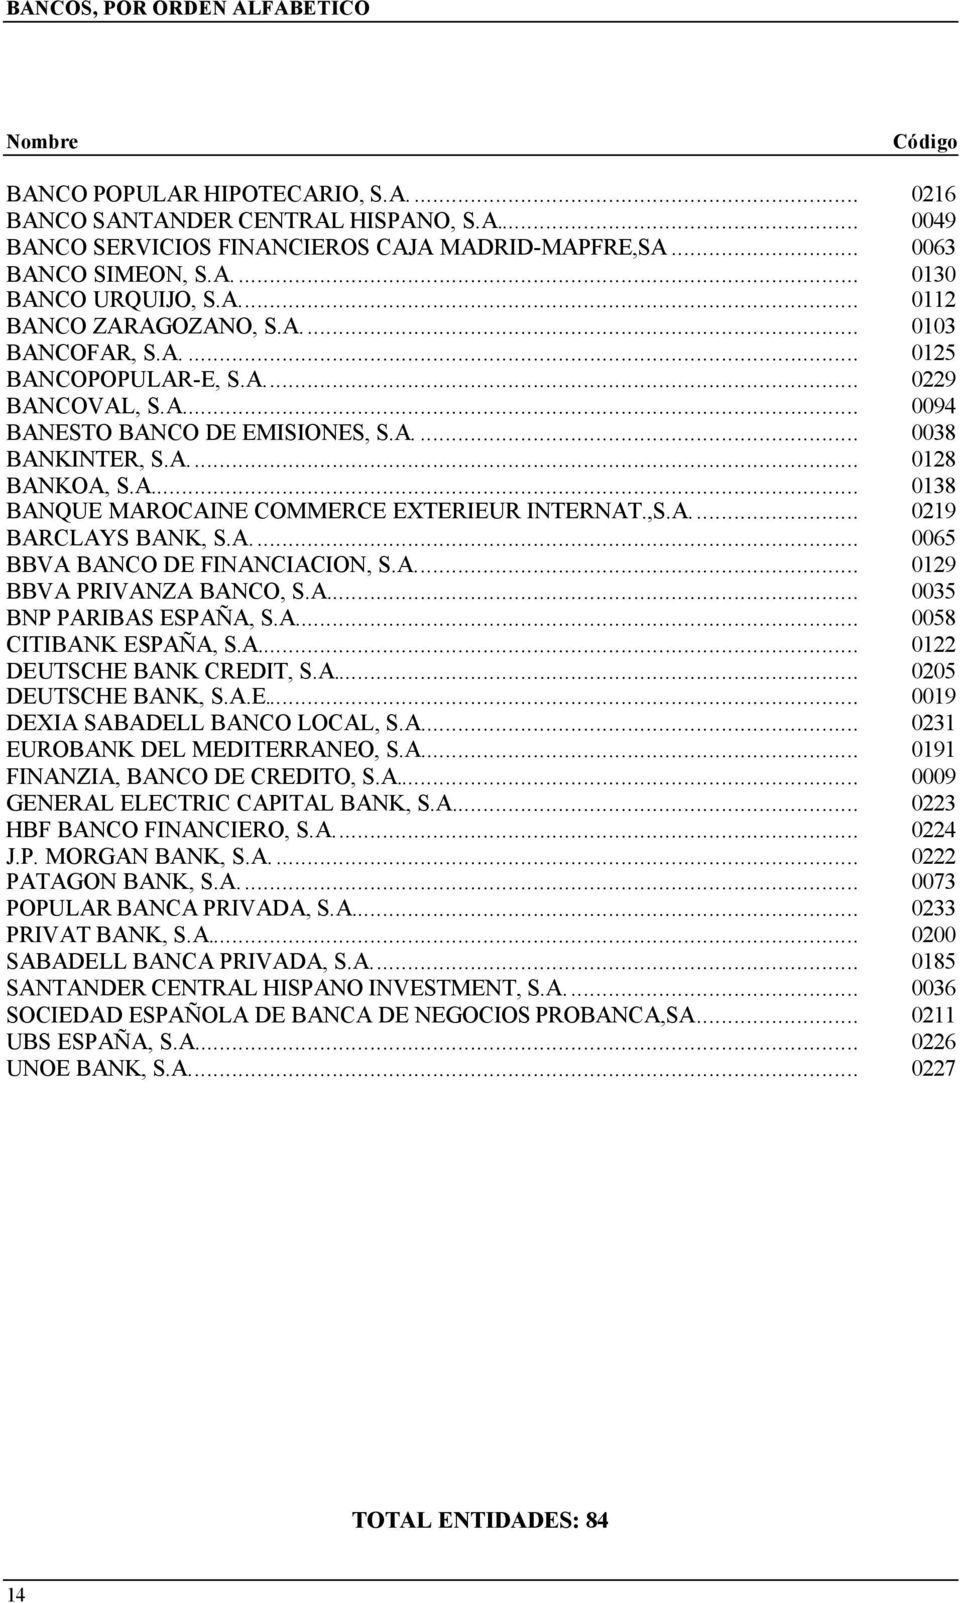 A... 0138 BANQUE MAROCAINE COMMERCE EXTERIEUR INTERNAT.,S.A.... 0219 BARCLAYS BANK, S.A.... 0065 BBVA BANCO DE FINANCIACION, S.A... 0129 BBVA PRIVANZA BANCO, S.A... 0035 BNP PARIBAS ESPAÑA, S.A... 0058 CITIBANK ESPAÑA, S.